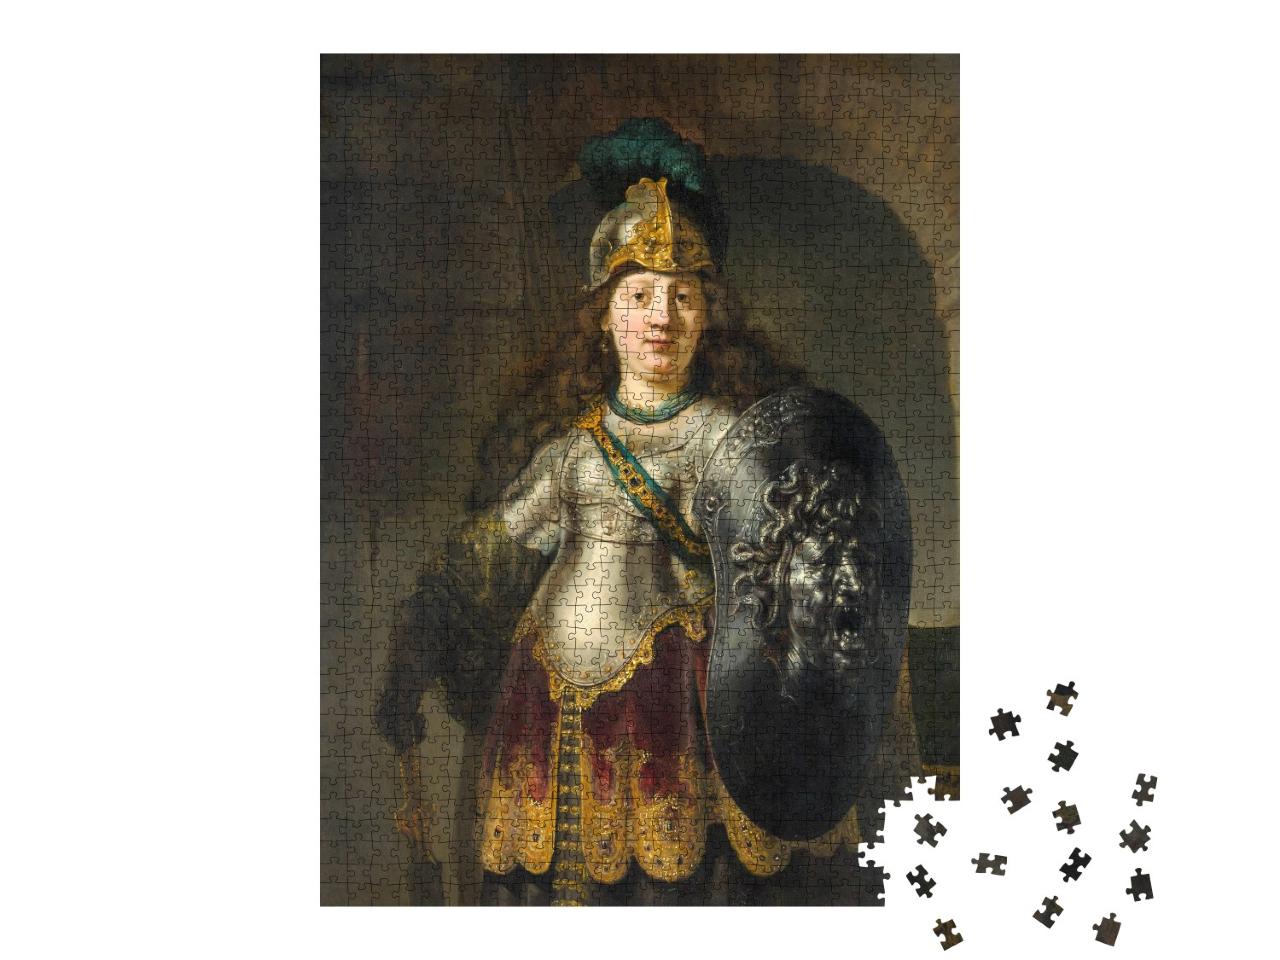 Puzzle de 1000 pièces « Rembrandt - Bellona »